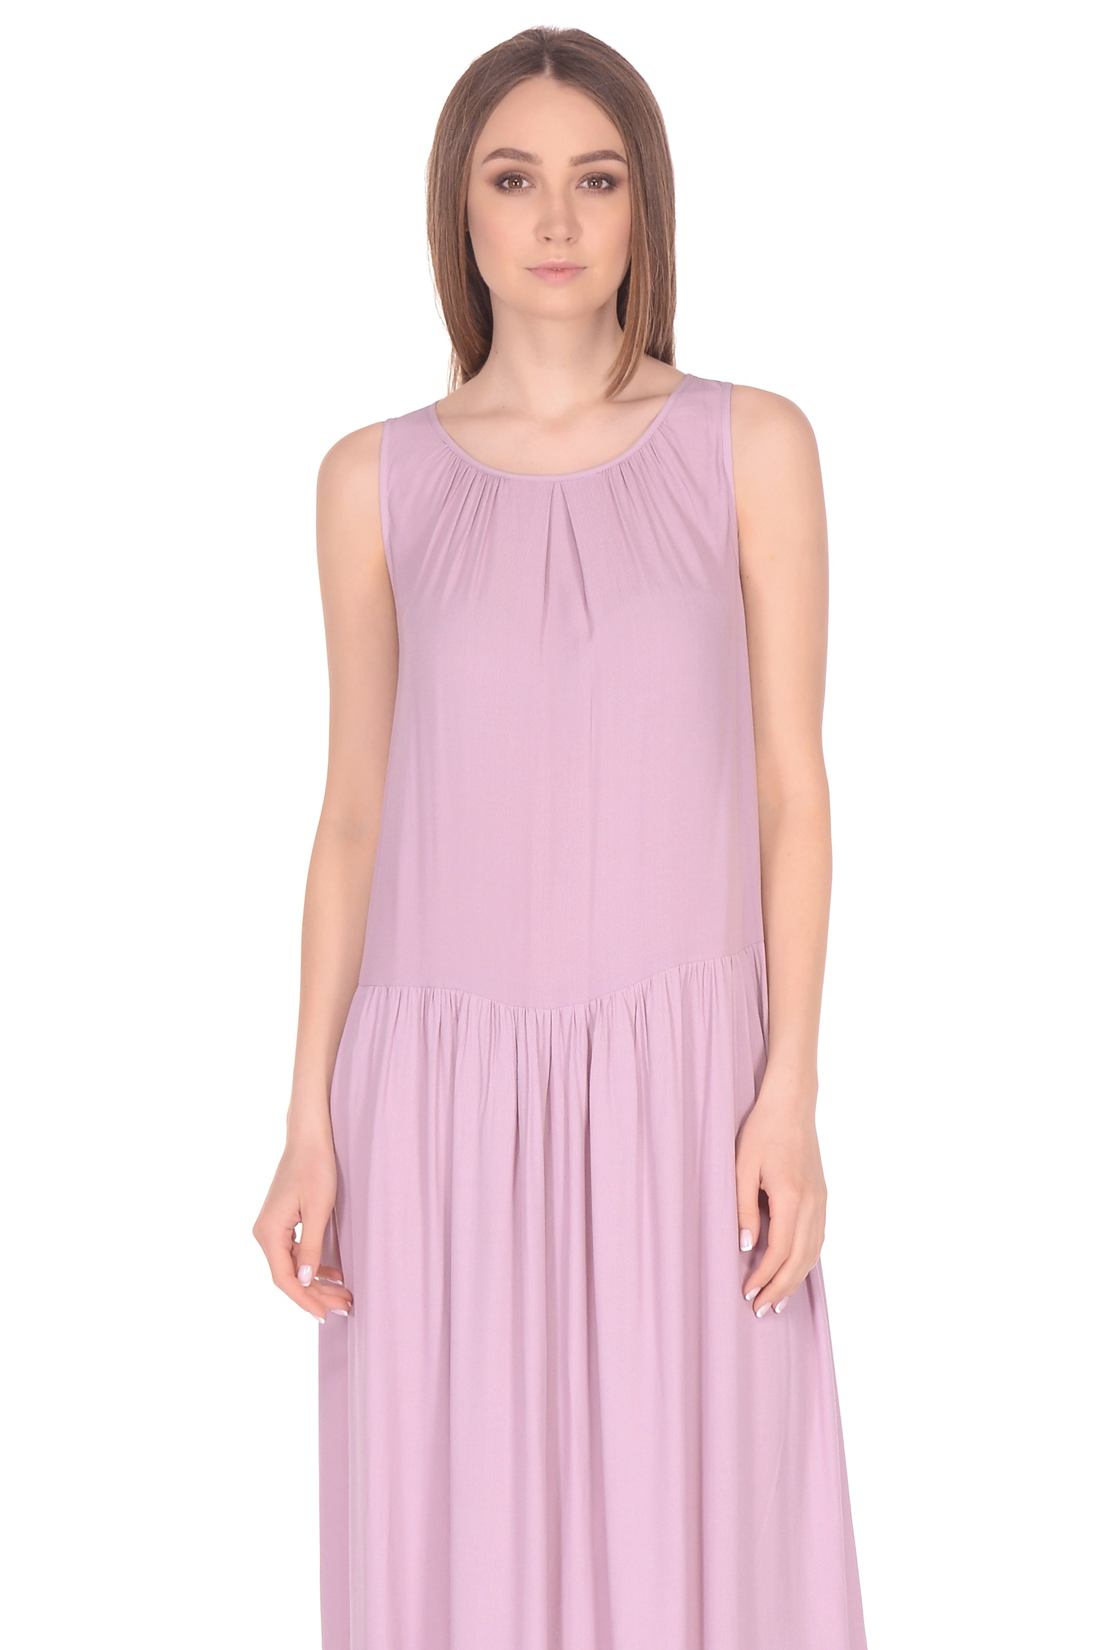 Прямое платье в пол (арт. baon B458084), размер XL, цвет розовый Прямое платье в пол (арт. baon B458084) - фото 3